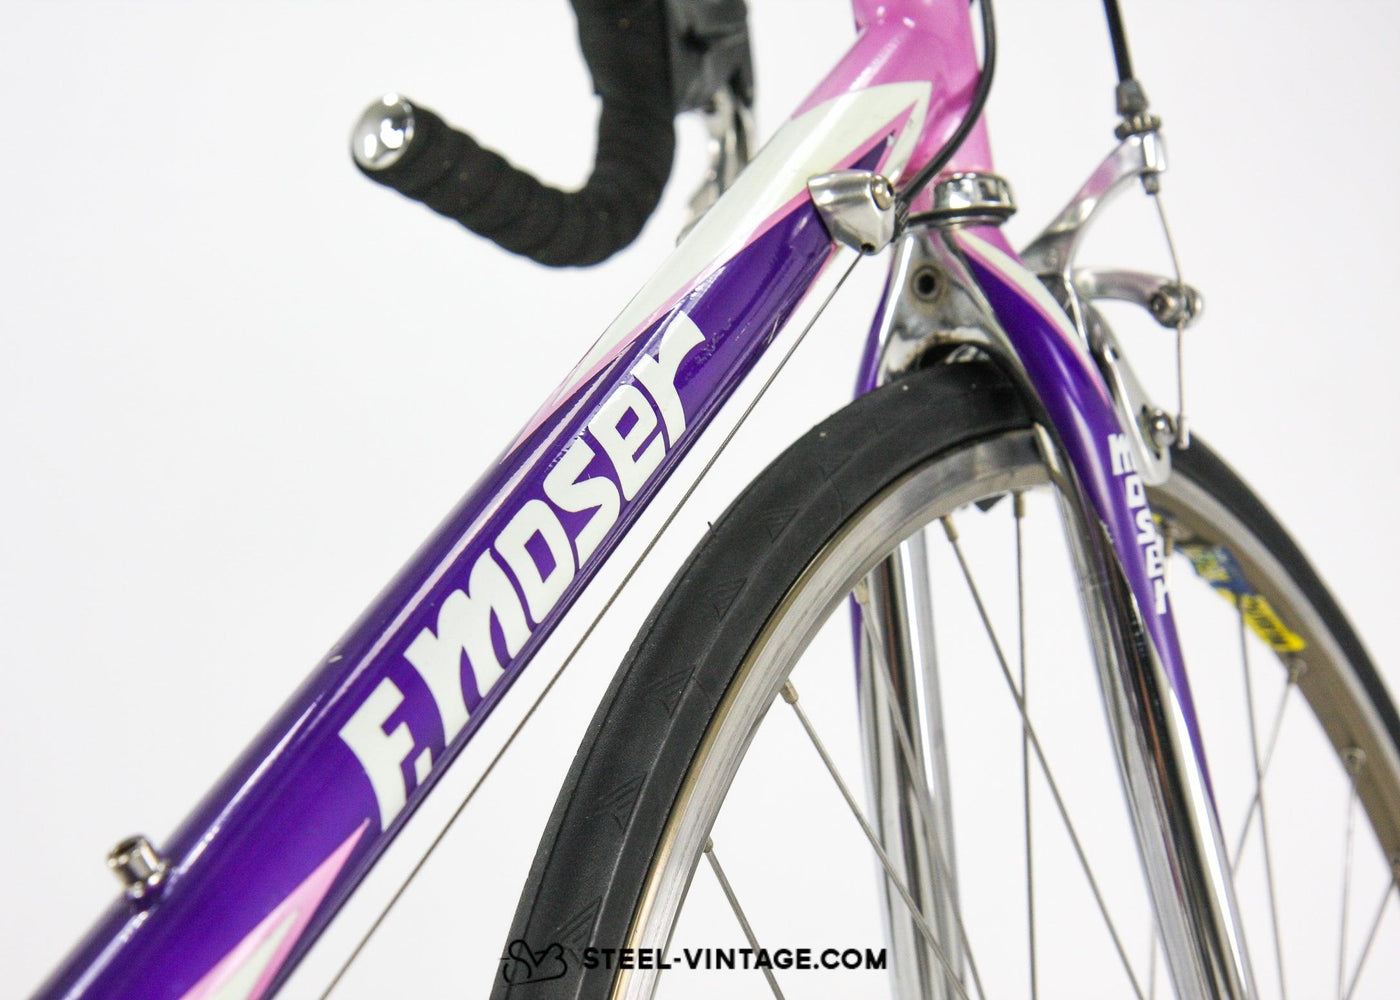 F. Moser Leader AX Vintage Racing Bike 1990s - Steel Vintage Bikes